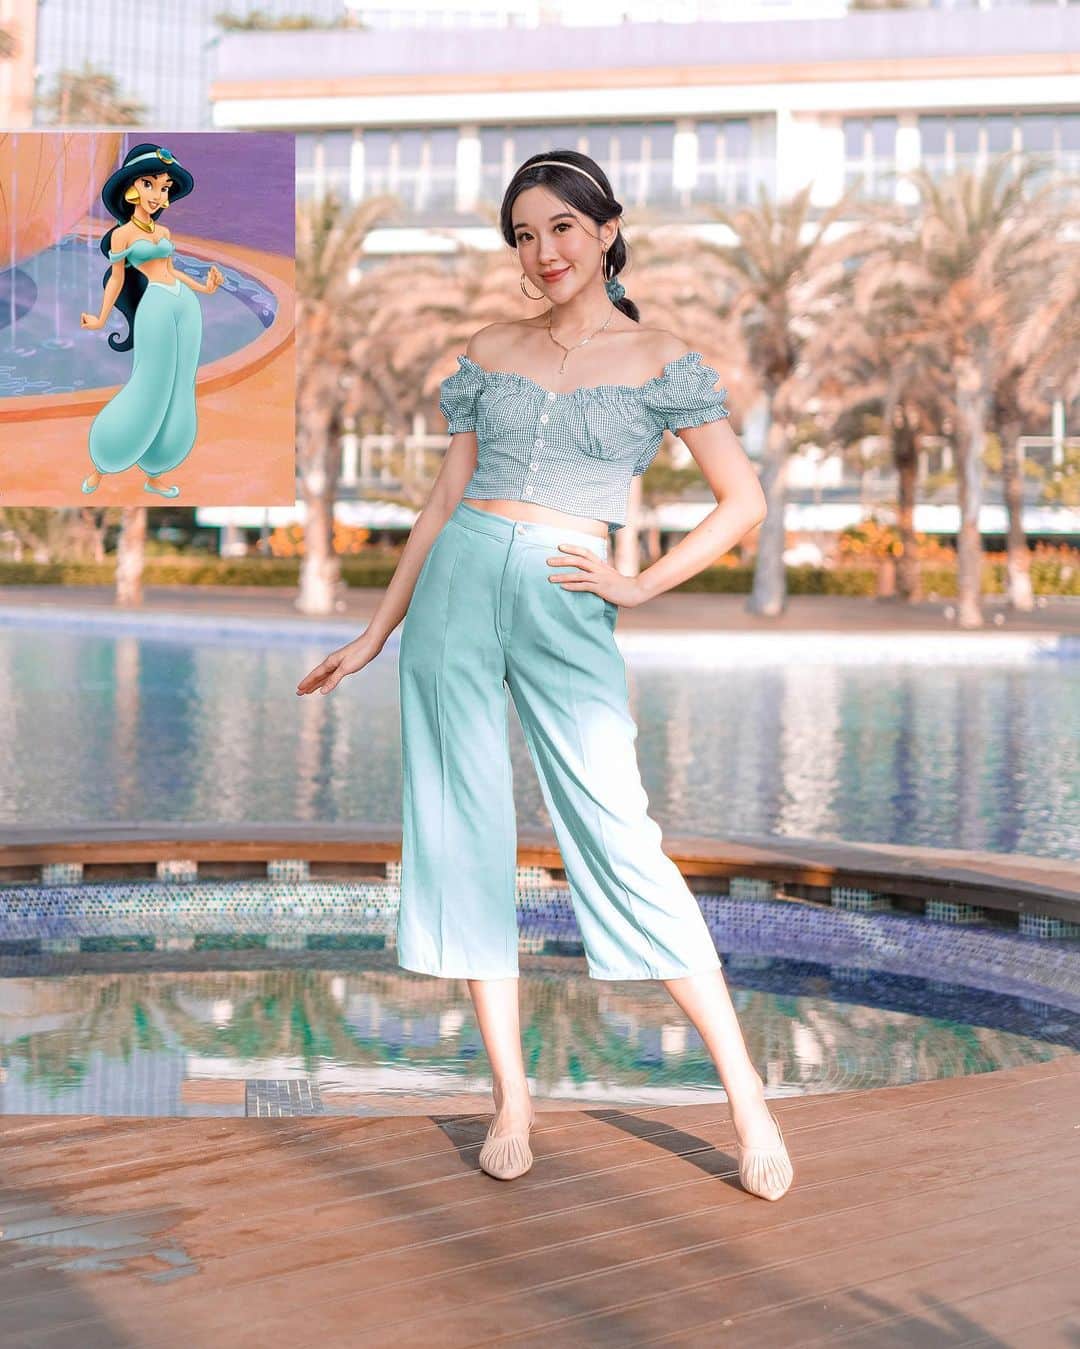 ジェシカ・ヤマダのインスタグラム：「Let me share this whole new world with you 🕌⁣⁣ Siapa disini yang waktu kecil pernah ada crush sama Aladdin? 👳🏽🌌🙋‍♀️🙈💫✨⁣ ⁣Gombalannya sakti loh dia:⁣ 𝘐 𝘤𝘢𝘯 𝘴𝘩𝘰𝘸 𝘺𝘰𝘶 𝘵𝘩𝘦 𝘸𝘰𝘳𝘭𝘥⁣ 𝘚𝘩𝘪𝘯𝘪𝘯𝘨, 𝘴𝘩𝘪𝘮𝘮𝘦𝘳𝘪𝘯𝘨, 𝘴𝘱𝘭𝘦𝘯𝘥𝘪𝘥⁣ 𝘛𝘦𝘭𝘭 𝘮𝘦, 𝘱𝘳𝘪𝘯𝘤𝘦𝘴𝘴, 𝘯𝘰𝘸 𝘸𝘩𝘦𝘯 𝘥𝘪𝘥⁣ 𝘠𝘰𝘶 𝘭𝘢𝘴𝘵 𝘭𝘦𝘵 𝘺𝘰𝘶𝘳 𝘩𝘦𝘢𝘳𝘵 𝘥𝘦𝘤𝘪𝘥𝘦?⁣ 𝘐 𝘤𝘢𝘯 𝘰𝘱𝘦𝘯 𝘺𝘰𝘶𝘳 𝘦𝘺𝘦𝘴⁣ 𝘛𝘢𝘬𝘦 𝘺𝘰𝘶 𝘸𝘰𝘯𝘥𝘦𝘳 𝘣𝘺 𝘸𝘰𝘯𝘥𝘦𝘳⁣ 𝘖𝘷𝘦𝘳, 𝘴𝘪𝘥𝘦𝘸𝘢𝘺𝘴 𝘢𝘯𝘥 𝘶𝘯𝘥𝘦𝘳⁣ 𝘖𝘯 𝘢 𝘮𝘢𝘨𝘪𝘤 𝘤𝘢𝘳𝘱𝘦𝘵 𝘳𝘪𝘥𝘦⁣ ⁣ Pusing deh pala #Jasmine 🤣💘💞⁣ ⁣ #ELLEJESSas #PrincessJasmine⁣ #DisneyBound⁣⁣ #jesswears #DisneyOOTD⁣ #DisneyPrincess」